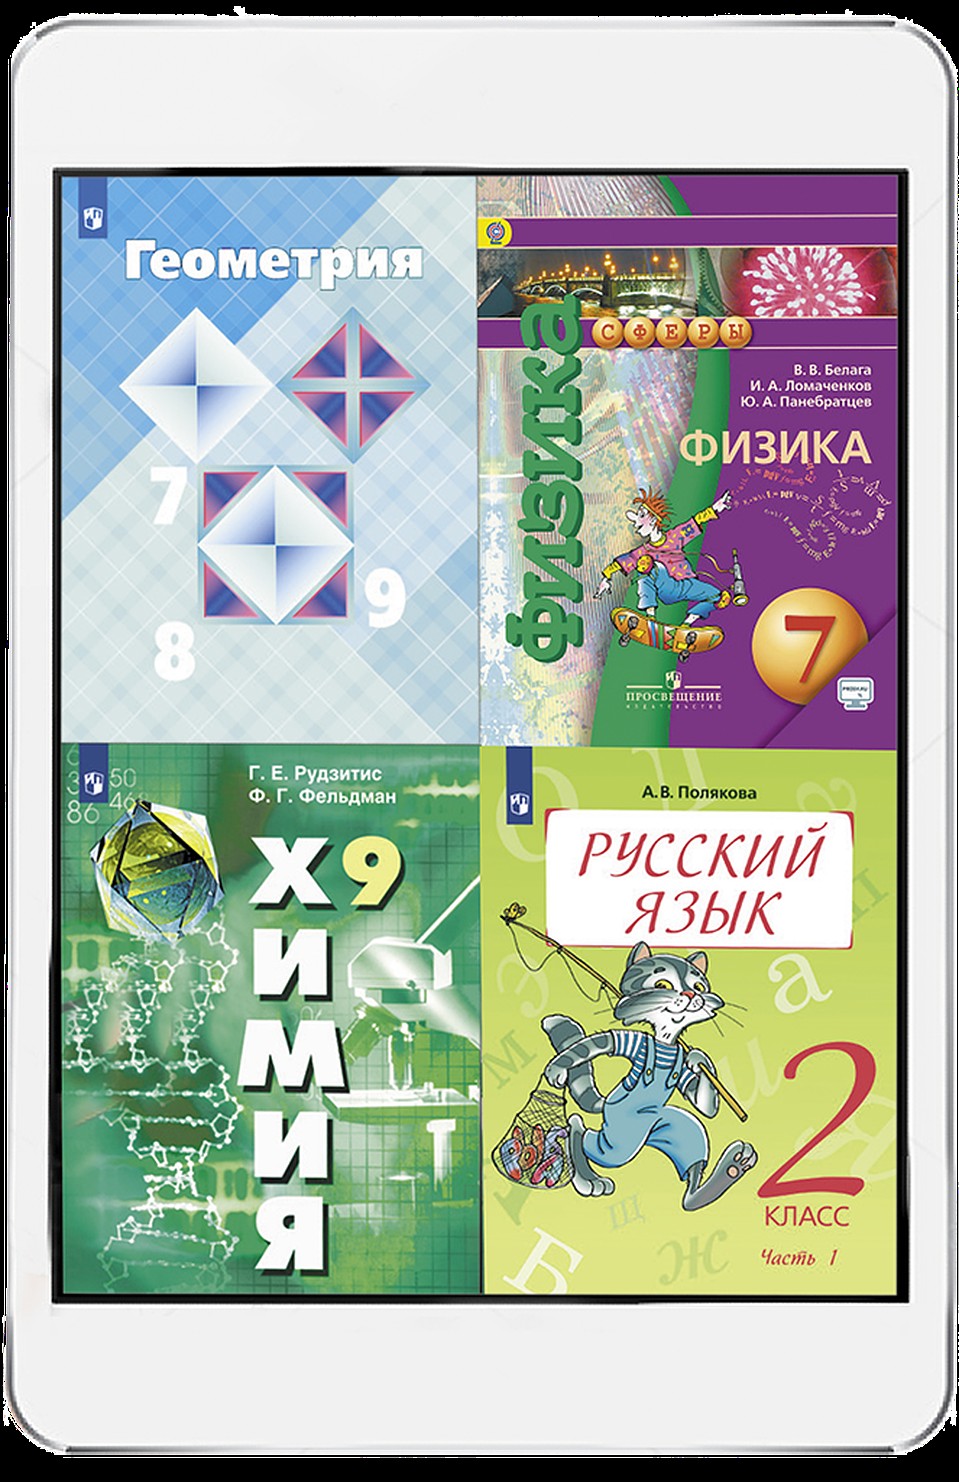 Август - время готовиться к новому учебному году! Все электронные интерактивные учебники вы найдете на shop.kp.ru! 